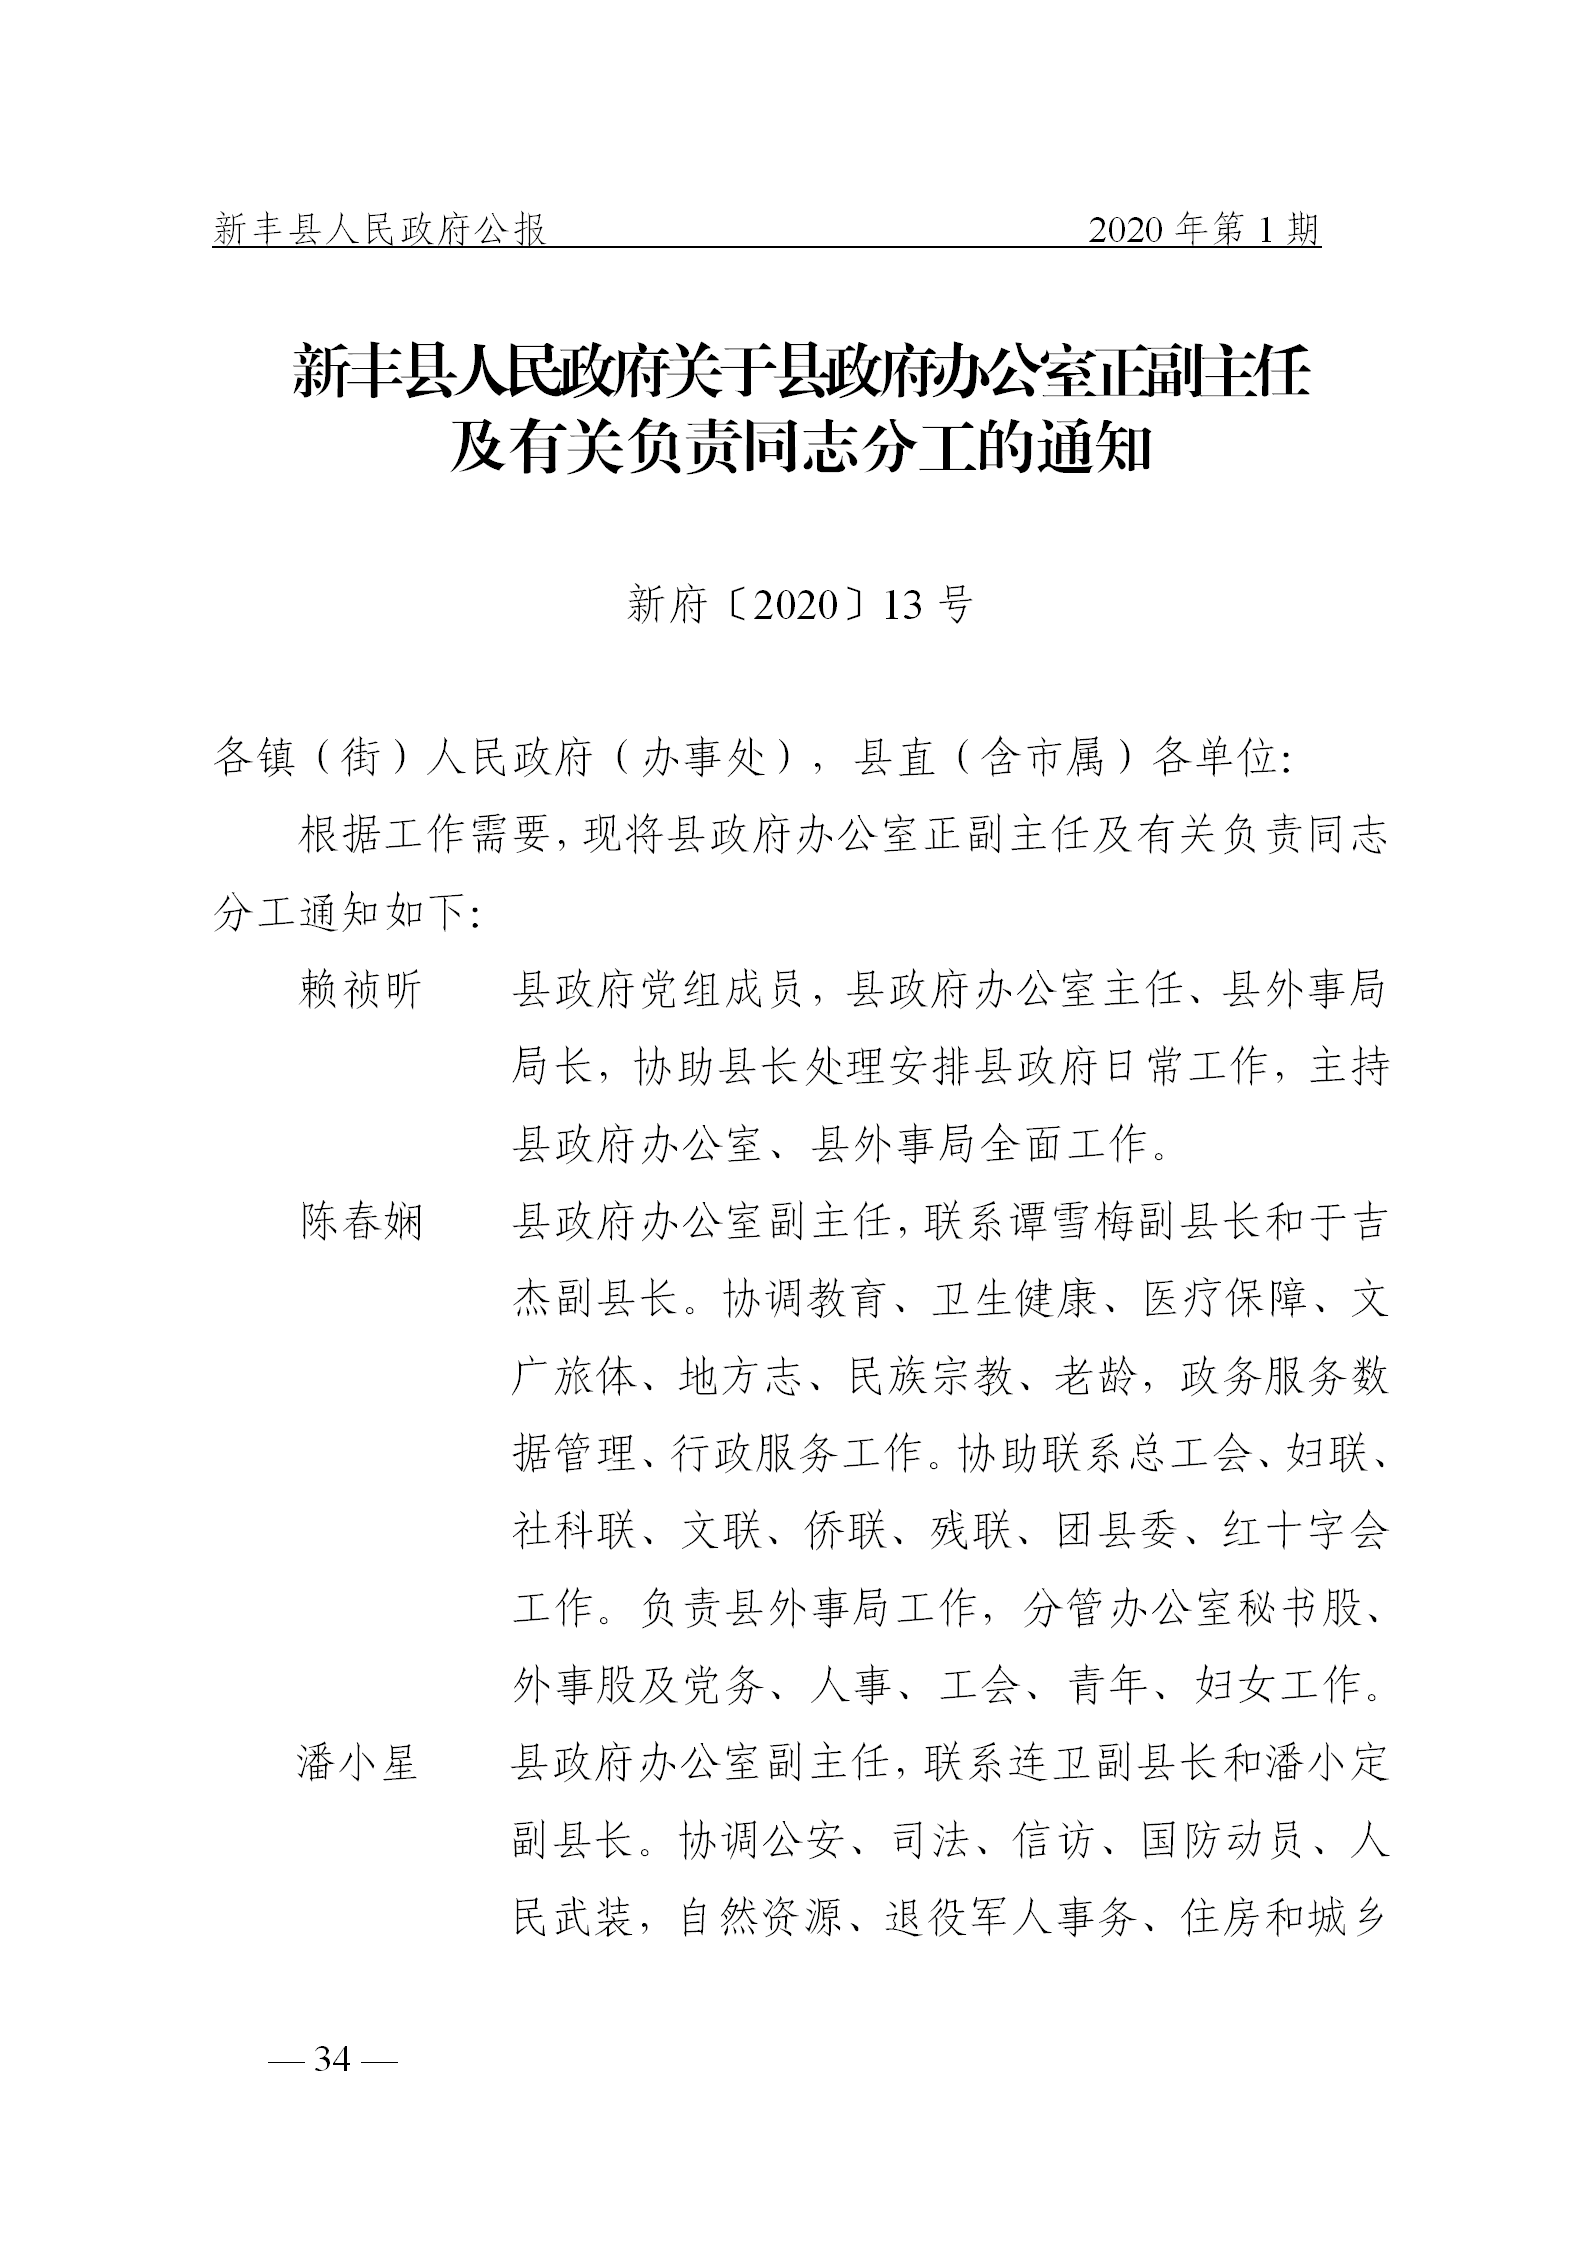 《新丰县人民政府公报》2020年第1期(1)_34.png